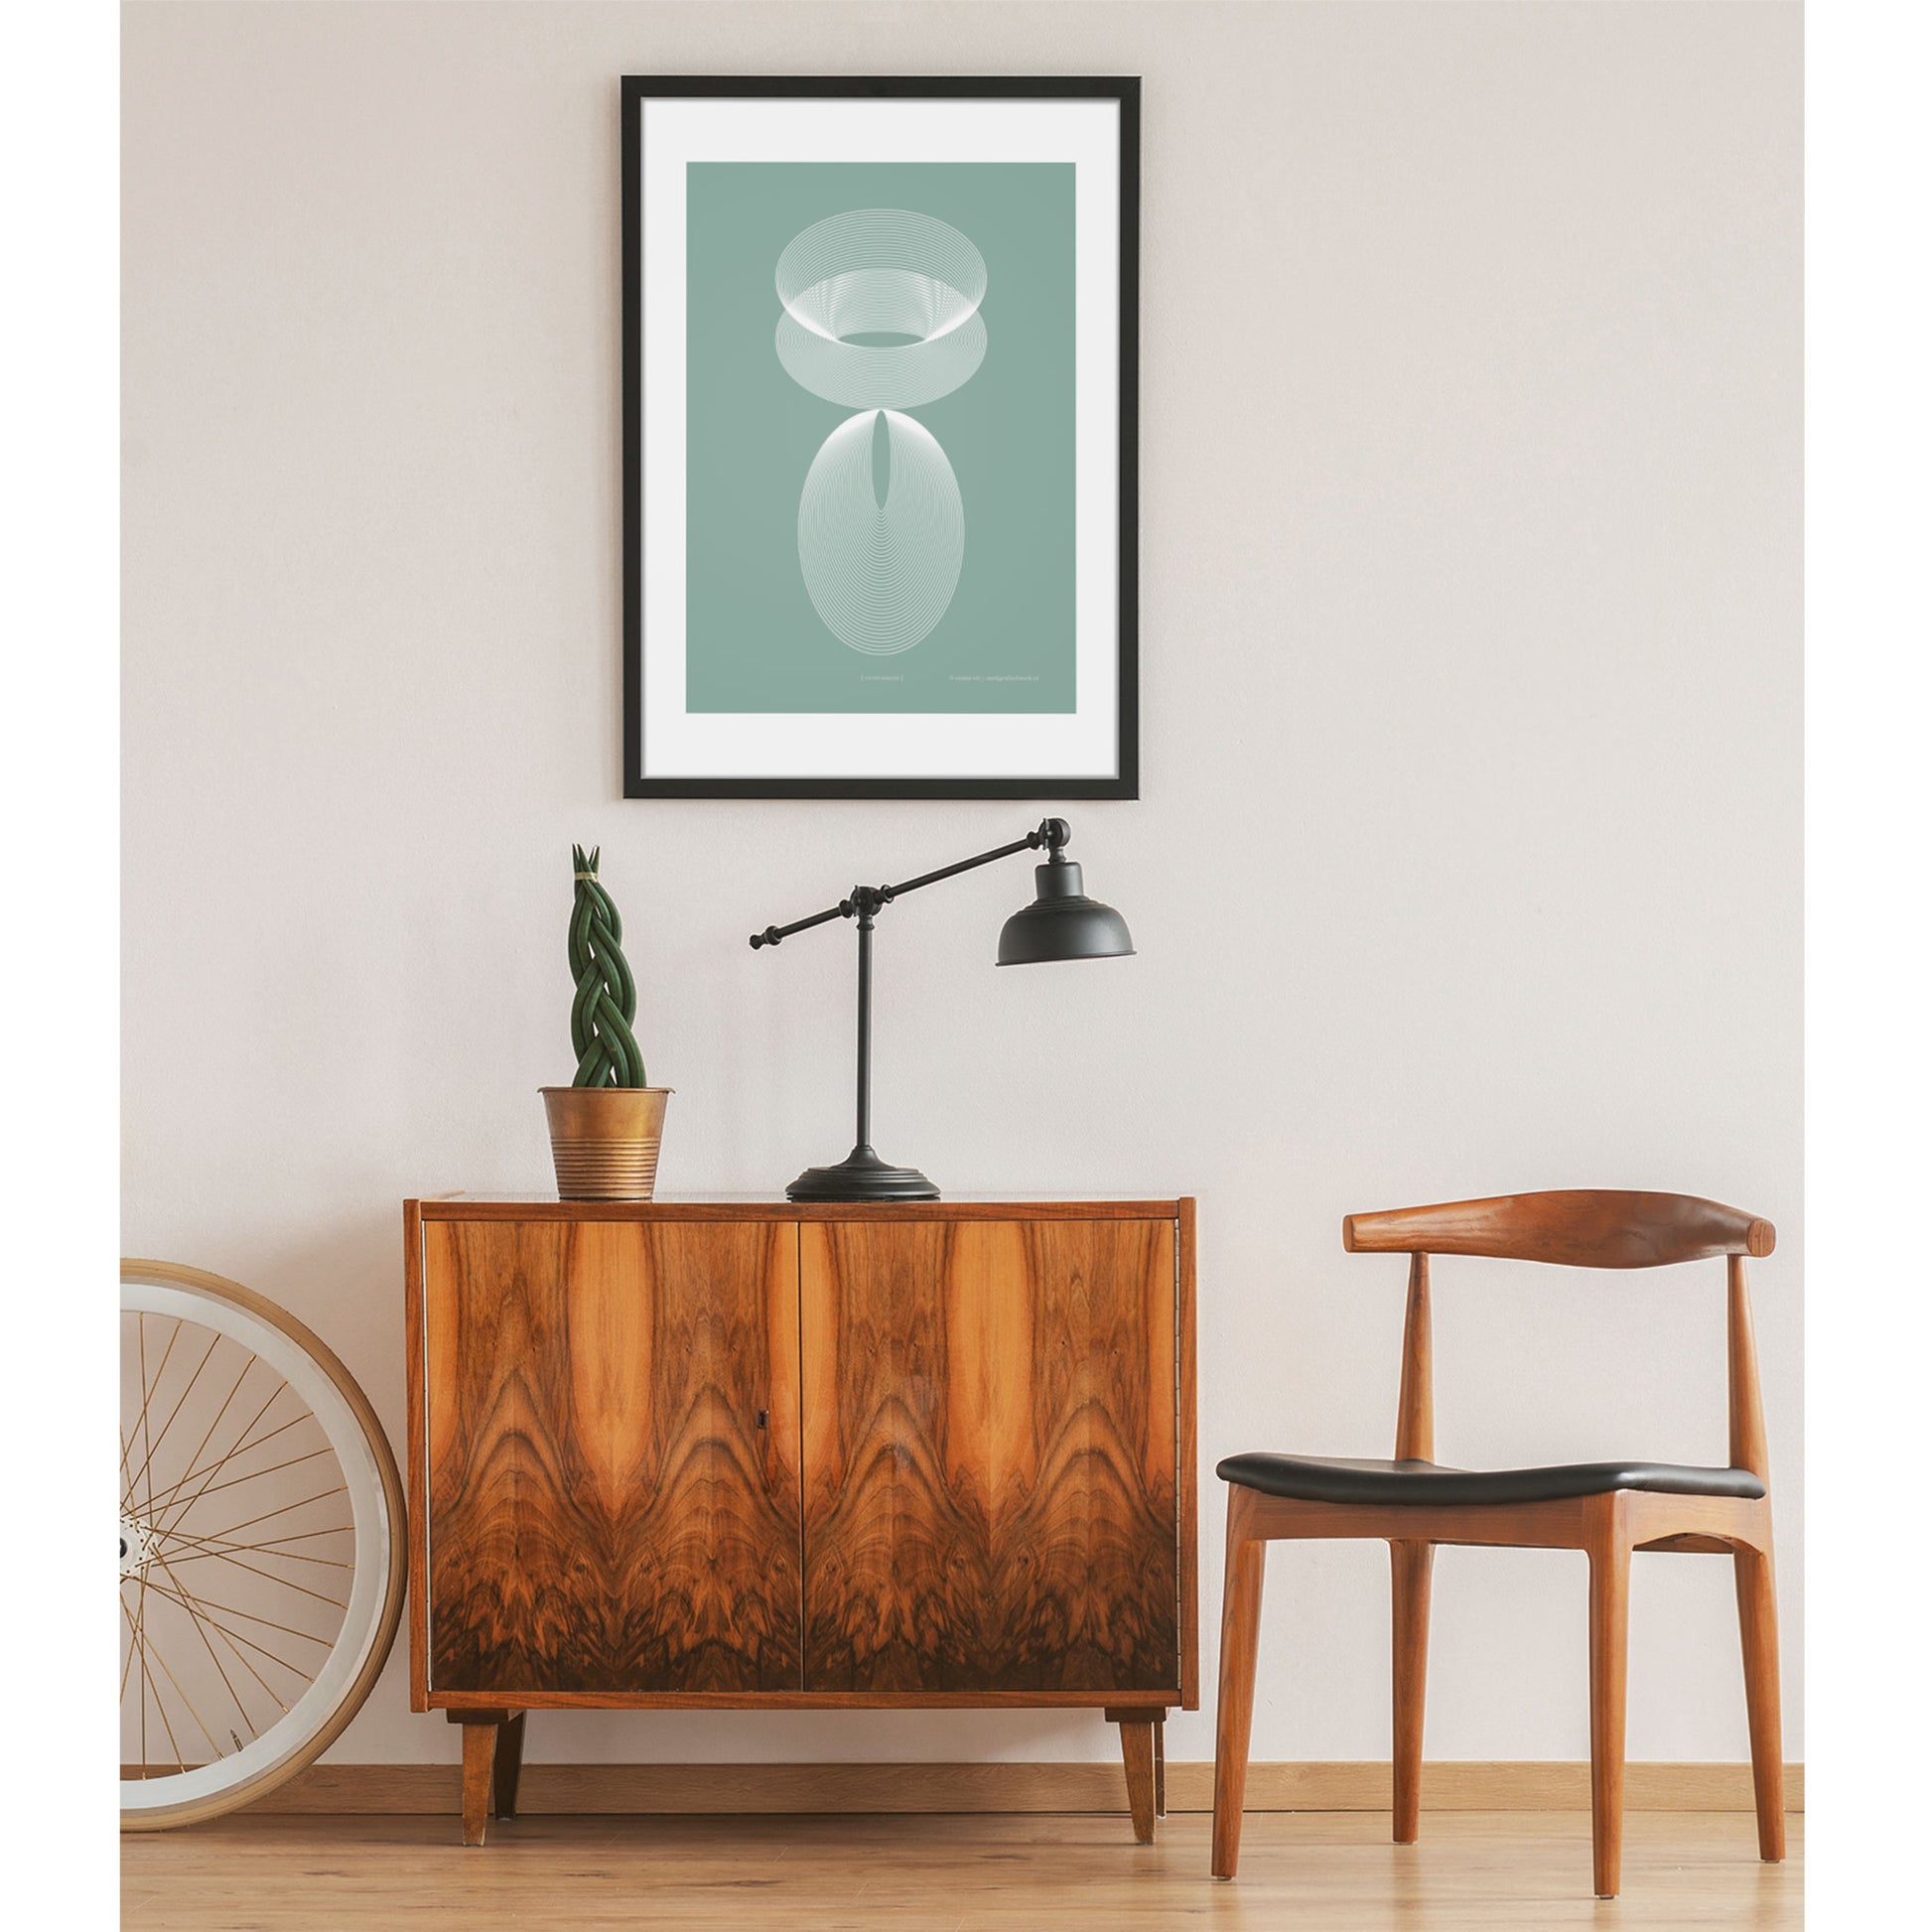 Productafbeelding, poster "licht-groen", foto impressie 1, hangend in een interieur met dressoir en stoel